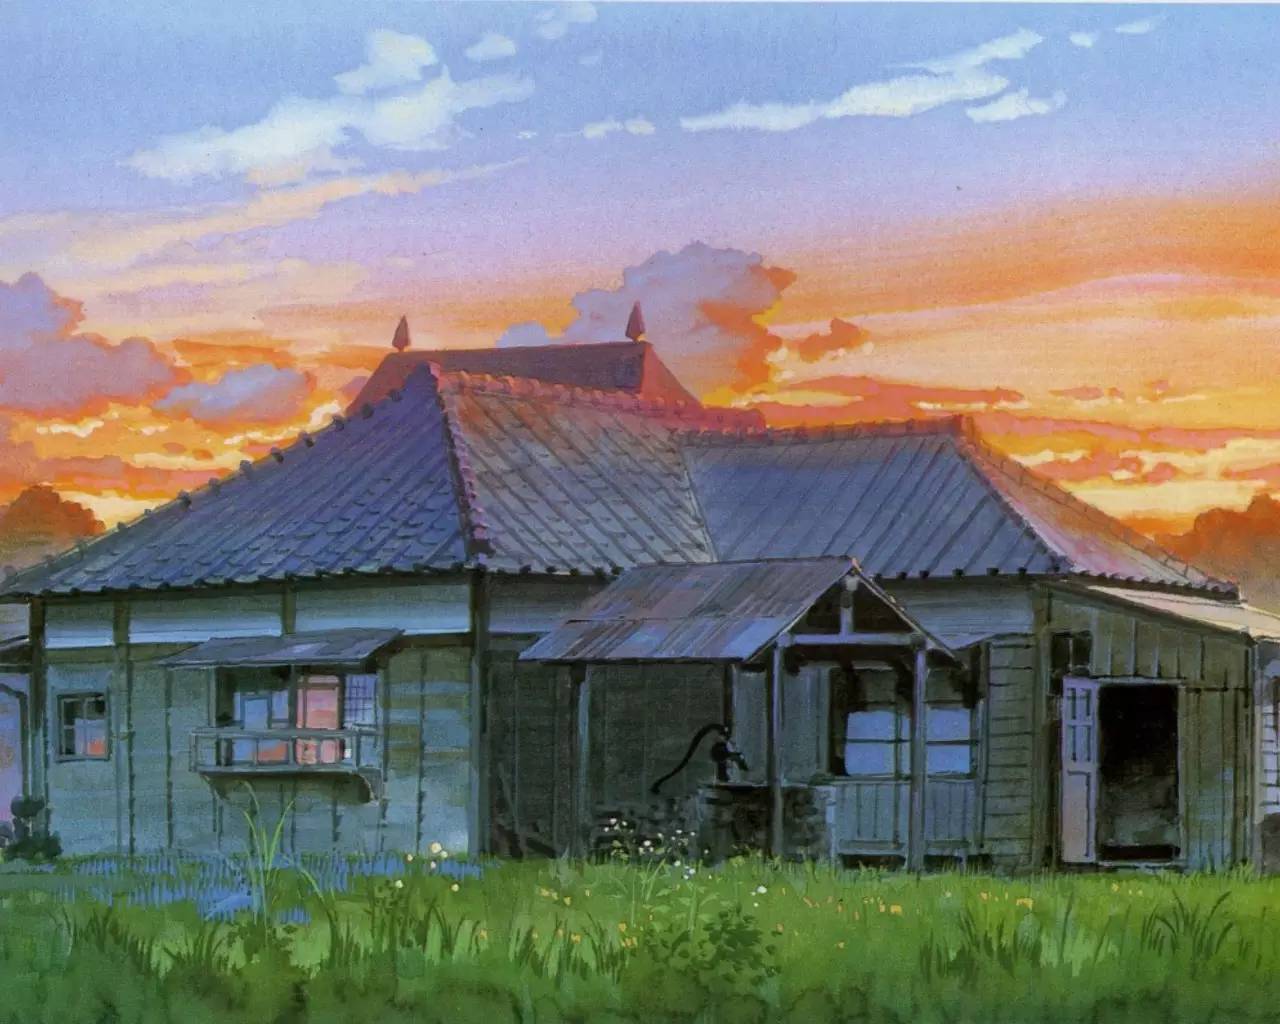 能打印出来挂在桌前就好了,宫崎骏动漫里的唯美风景